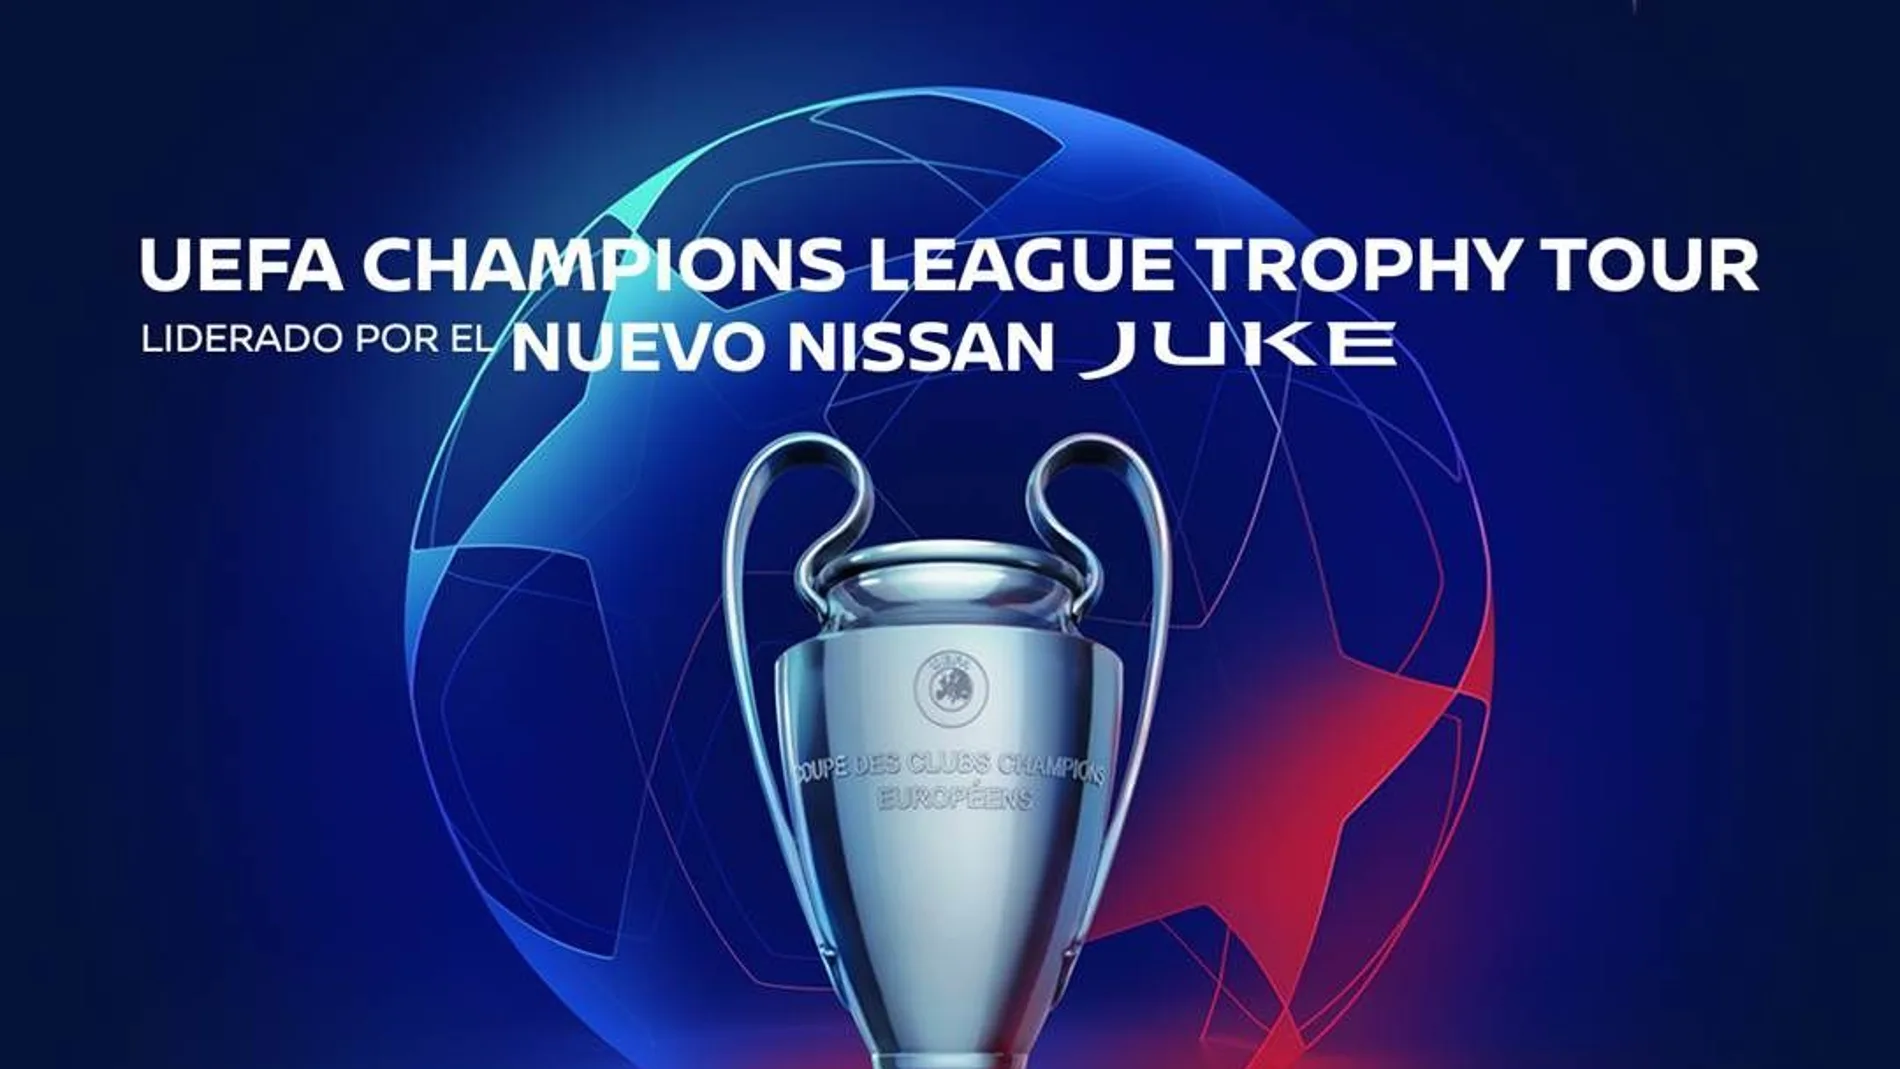 La gira del trofeo de la UEFA Champions League llega a Nissan Almenar